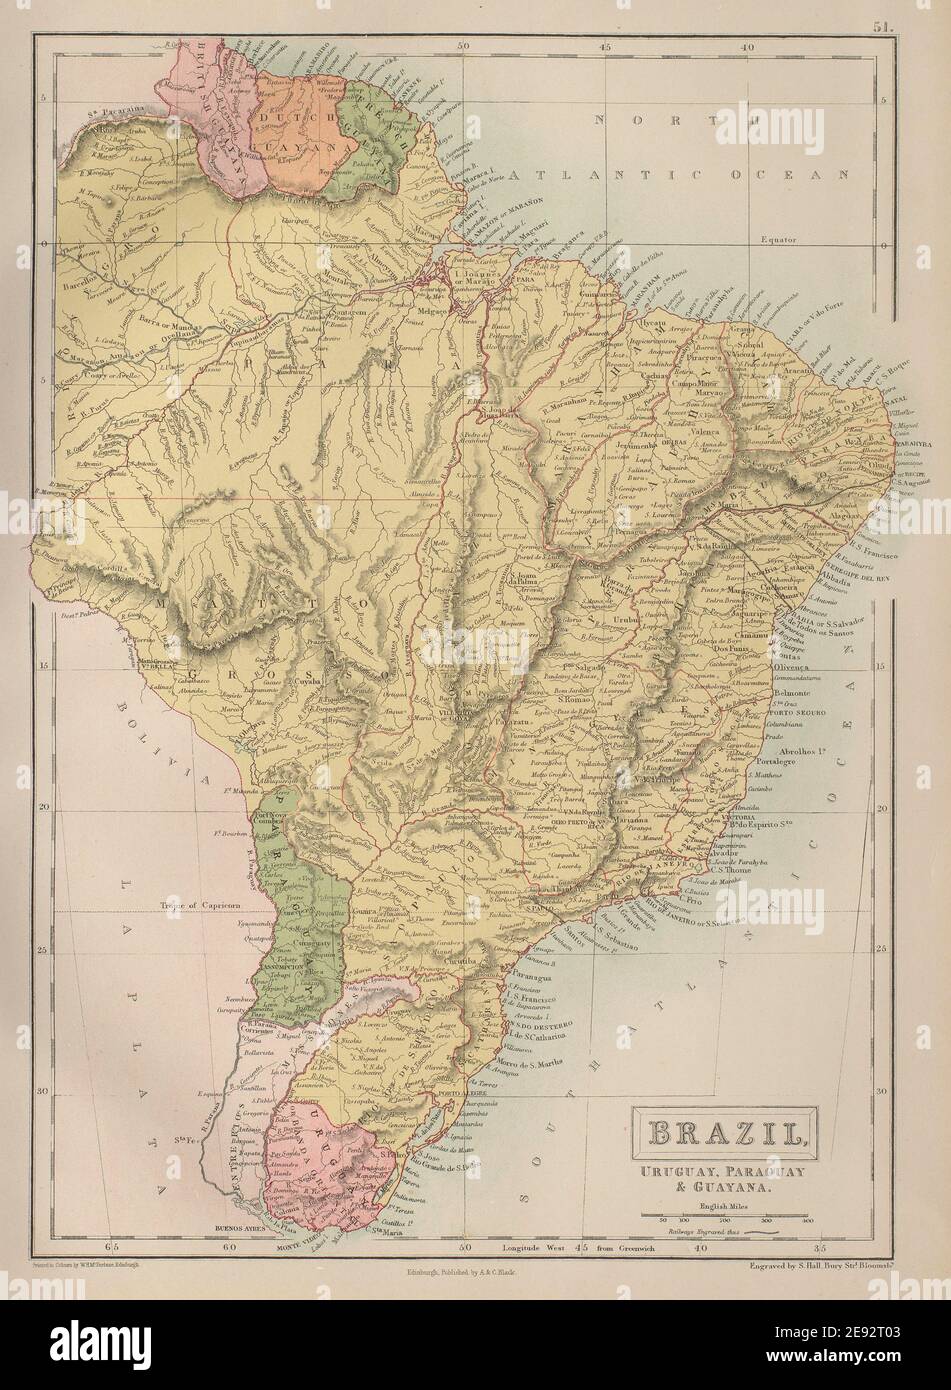 Brazil, Uruguay, Paraguay & Guayana. Guyanas. BARTHOLOMEW 1870 old antique map Stock Photo